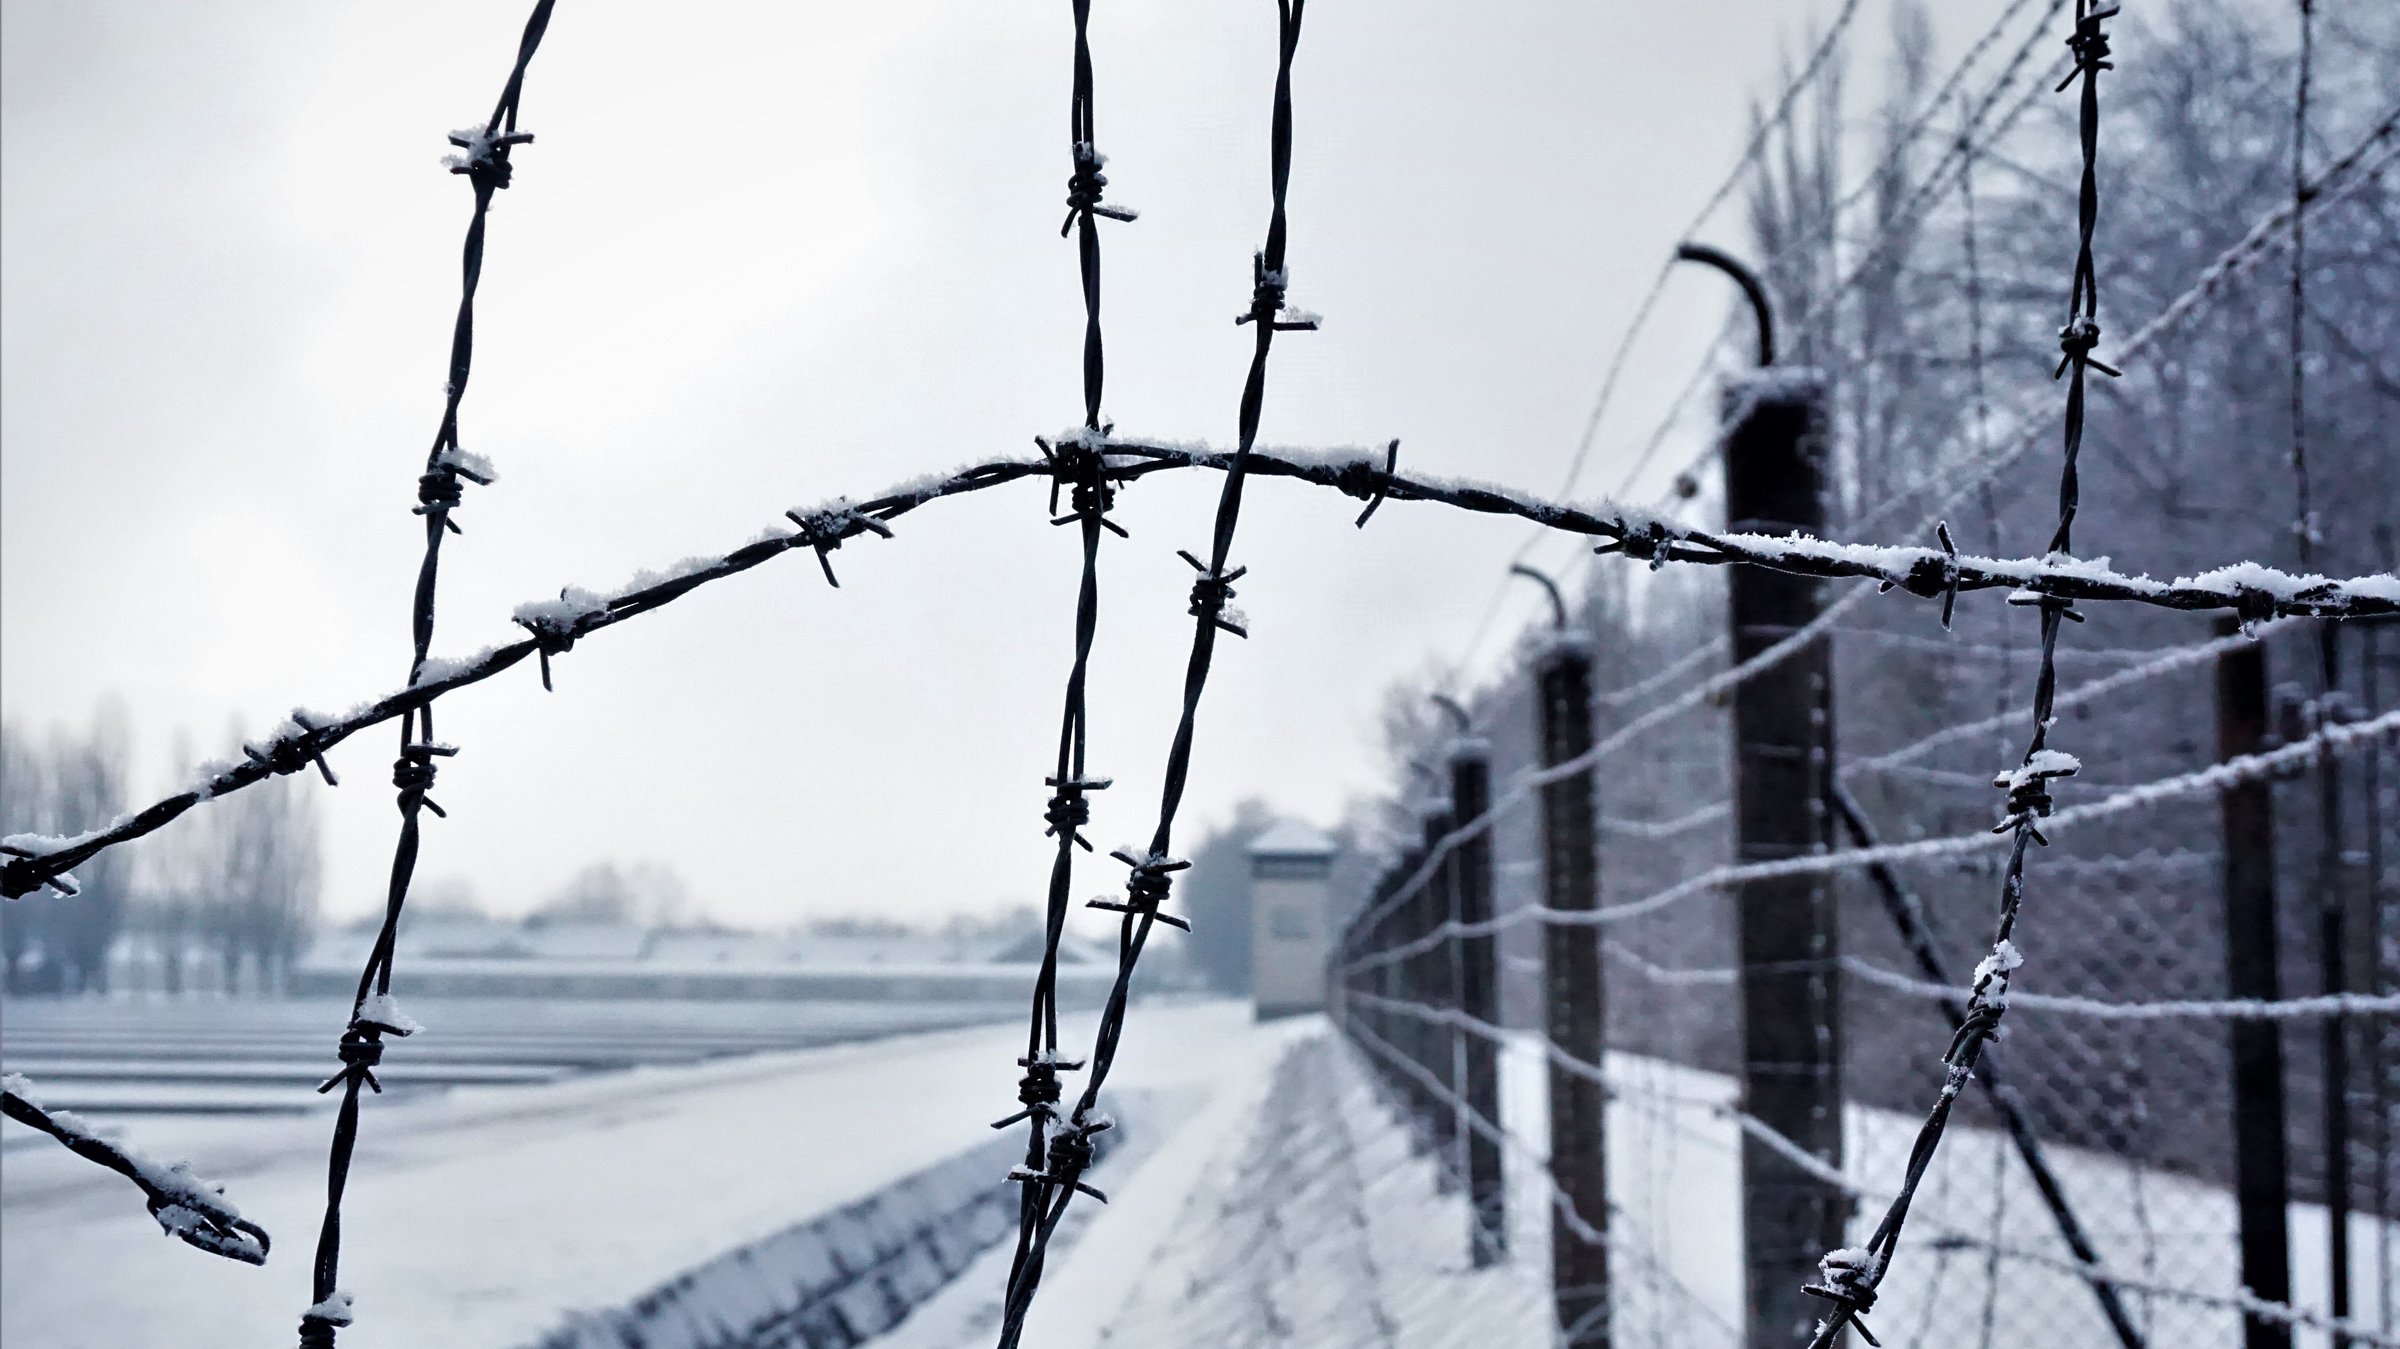 "24 Stunden Dachau": Dachau: Nahaufnahme des Stacheldrahtzauns im Schnee. Im  Hintergrund ist ein Wachturm zu erkennen.